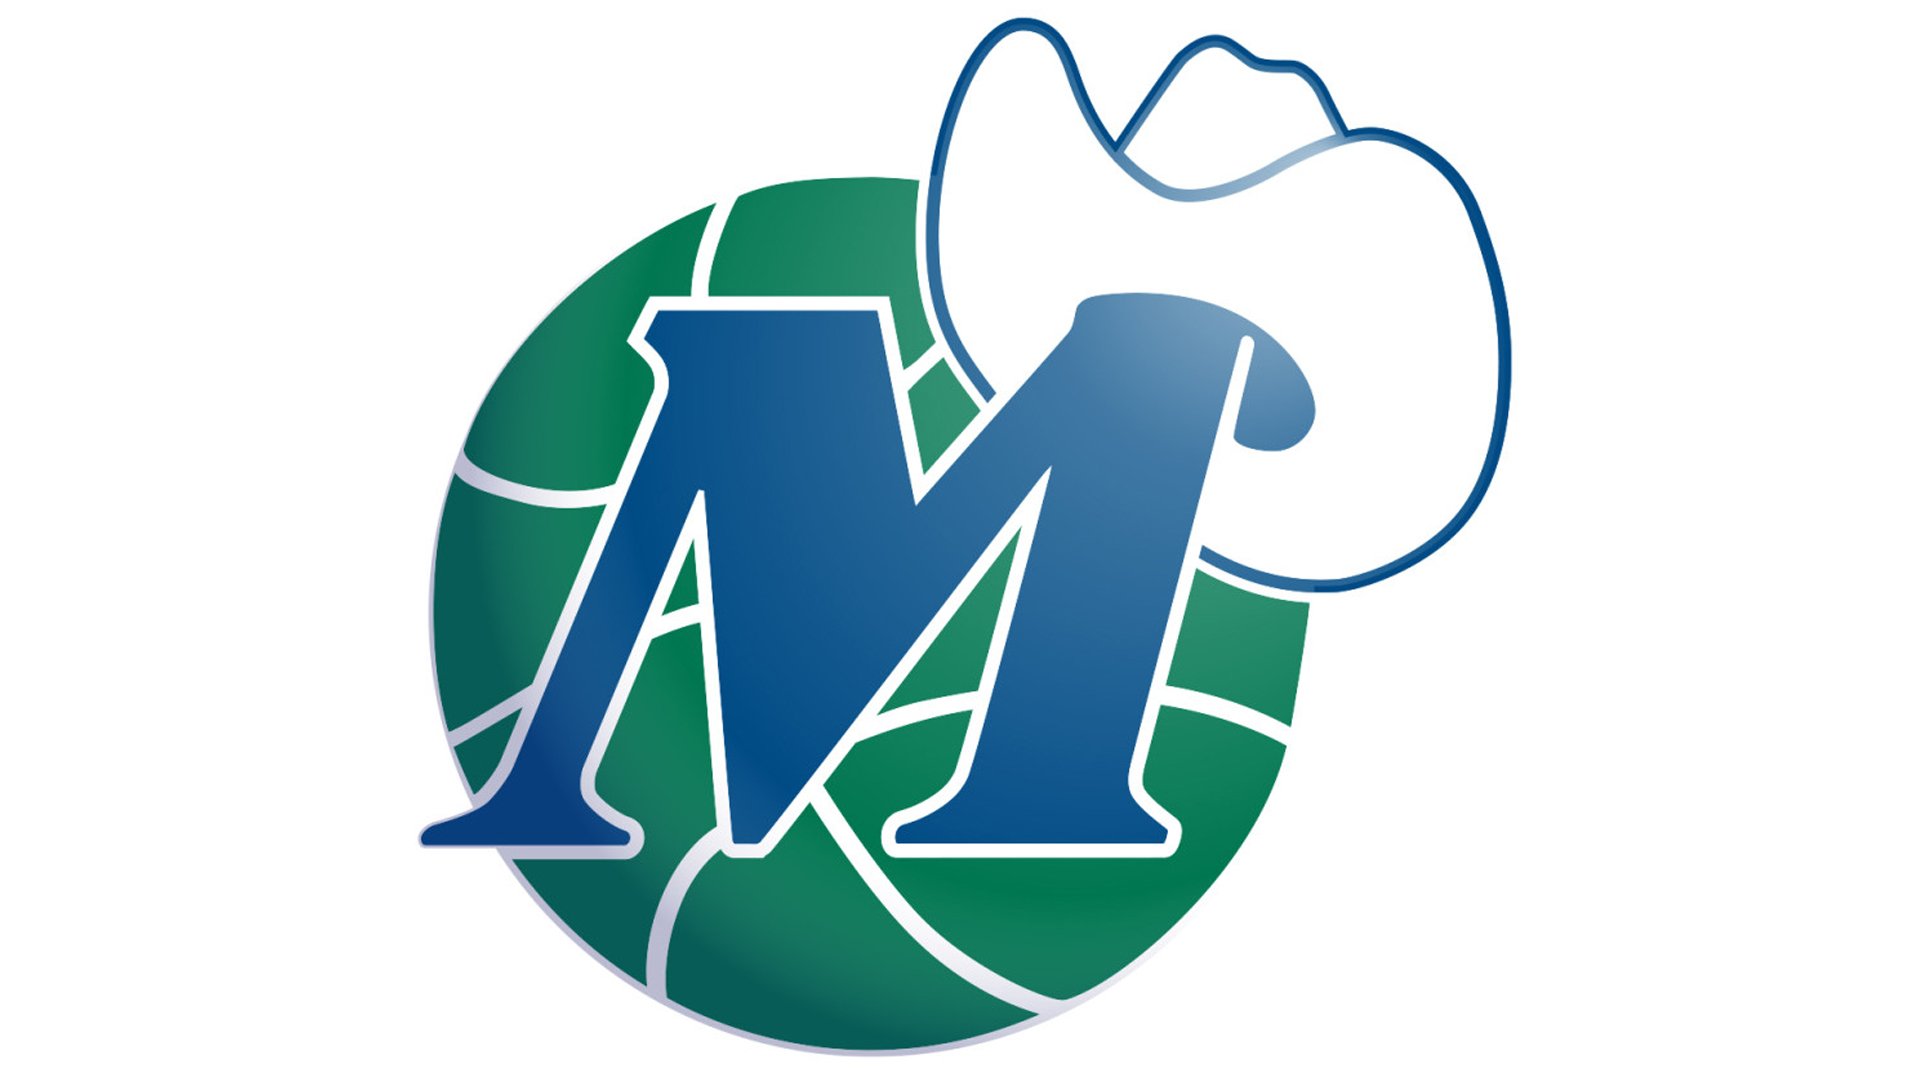 Dallas Mavericks Logo And Symbol, Meaning, History, Png 20D